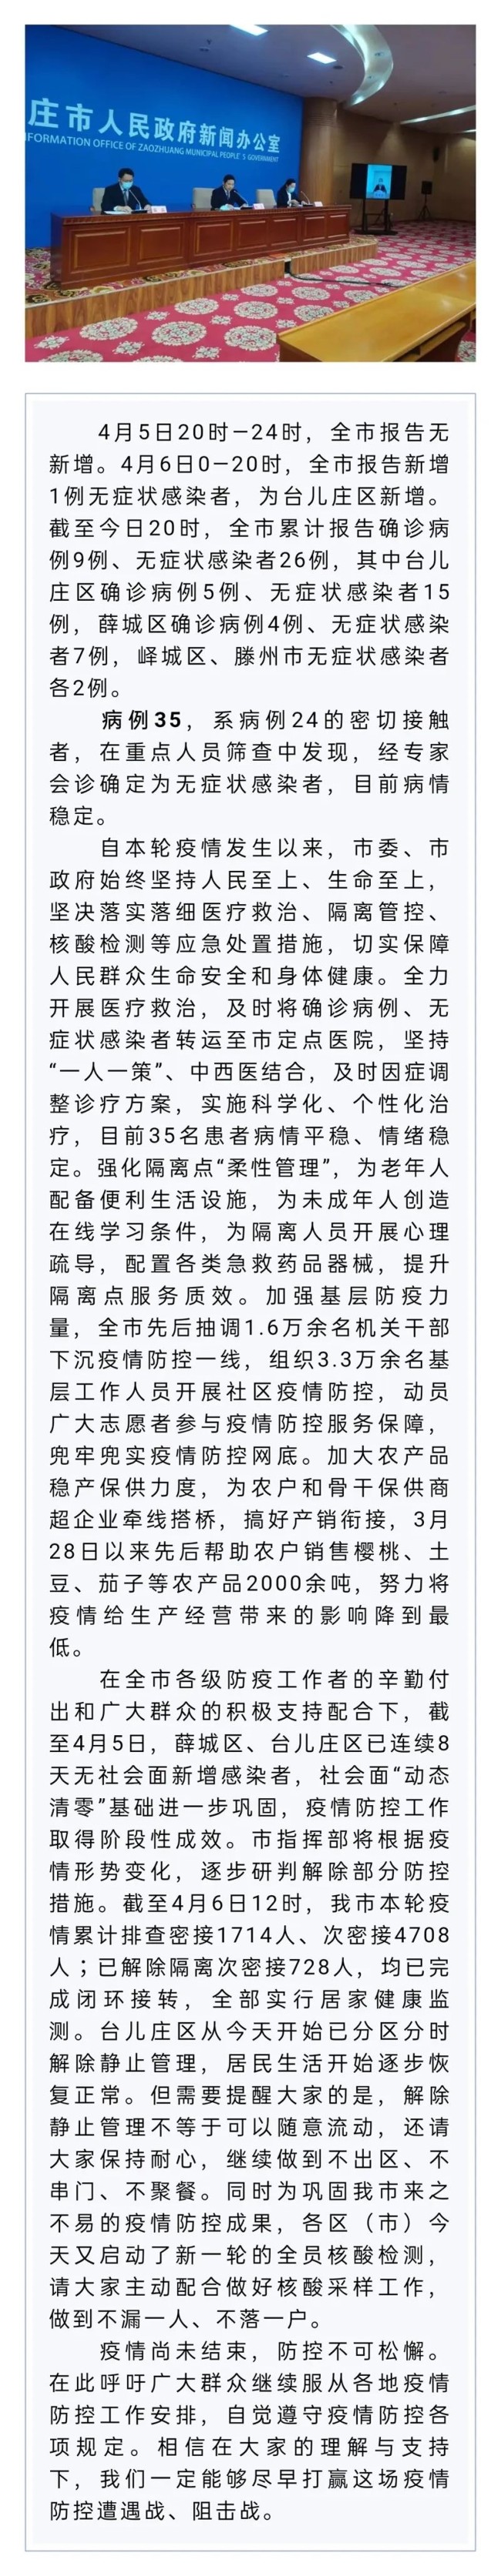 枣庄市召开疫情防控第十场新闻发布会，相关负责人答记者问